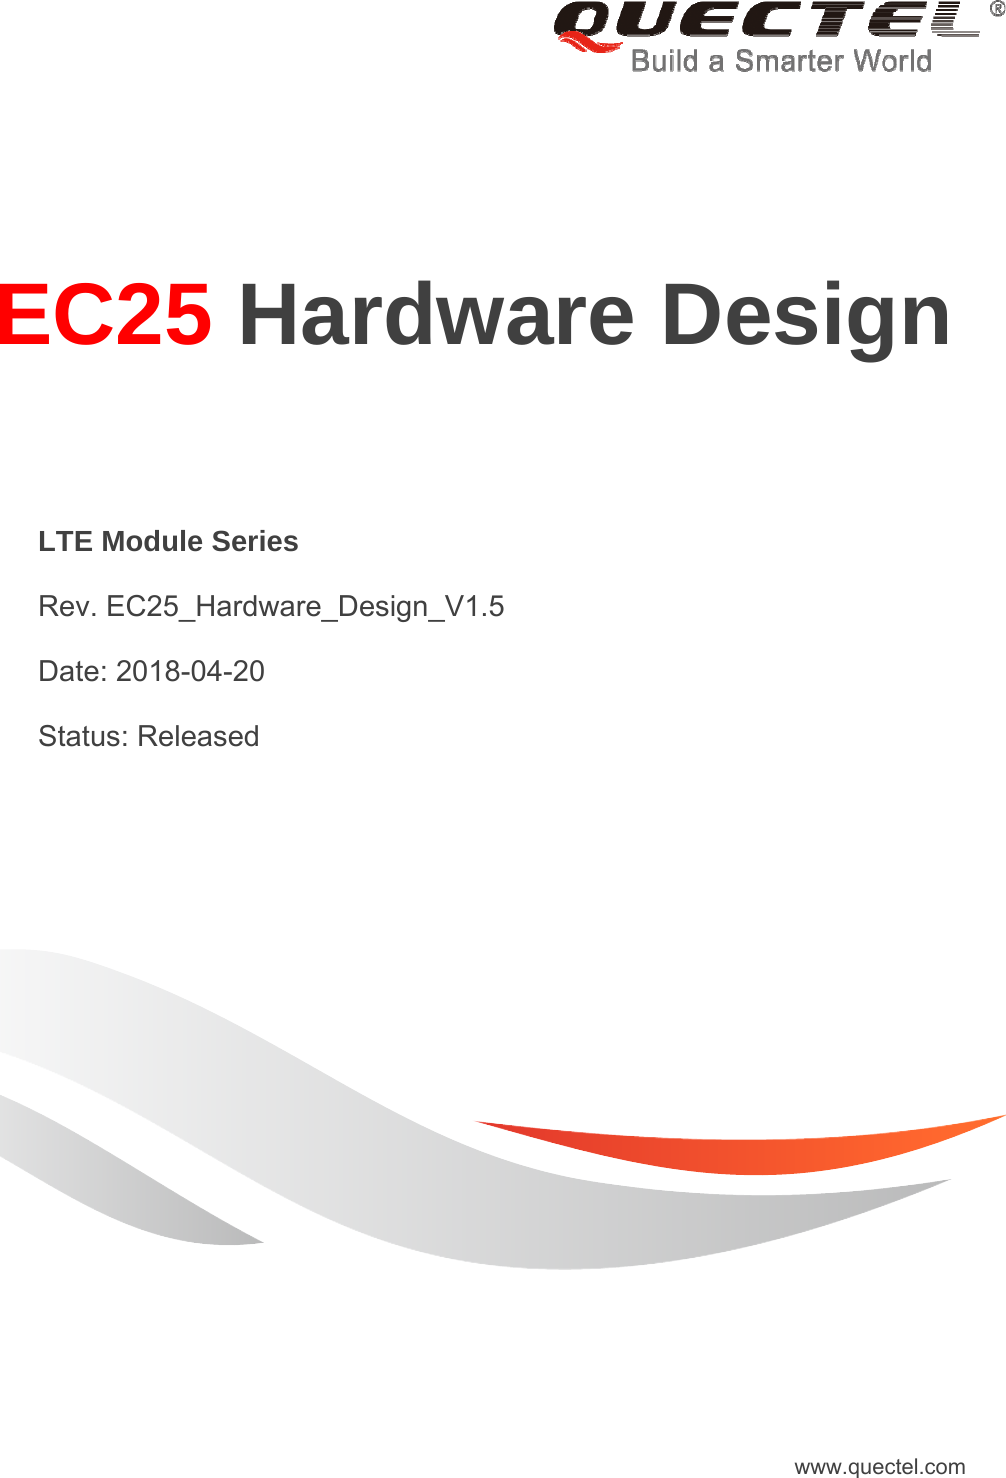     EC25 Hardware Design   LTE Module Series  Rev. EC25_Hardware_Design_V1.5  Date: 2018-04-20  Status: Released www.quectel.com